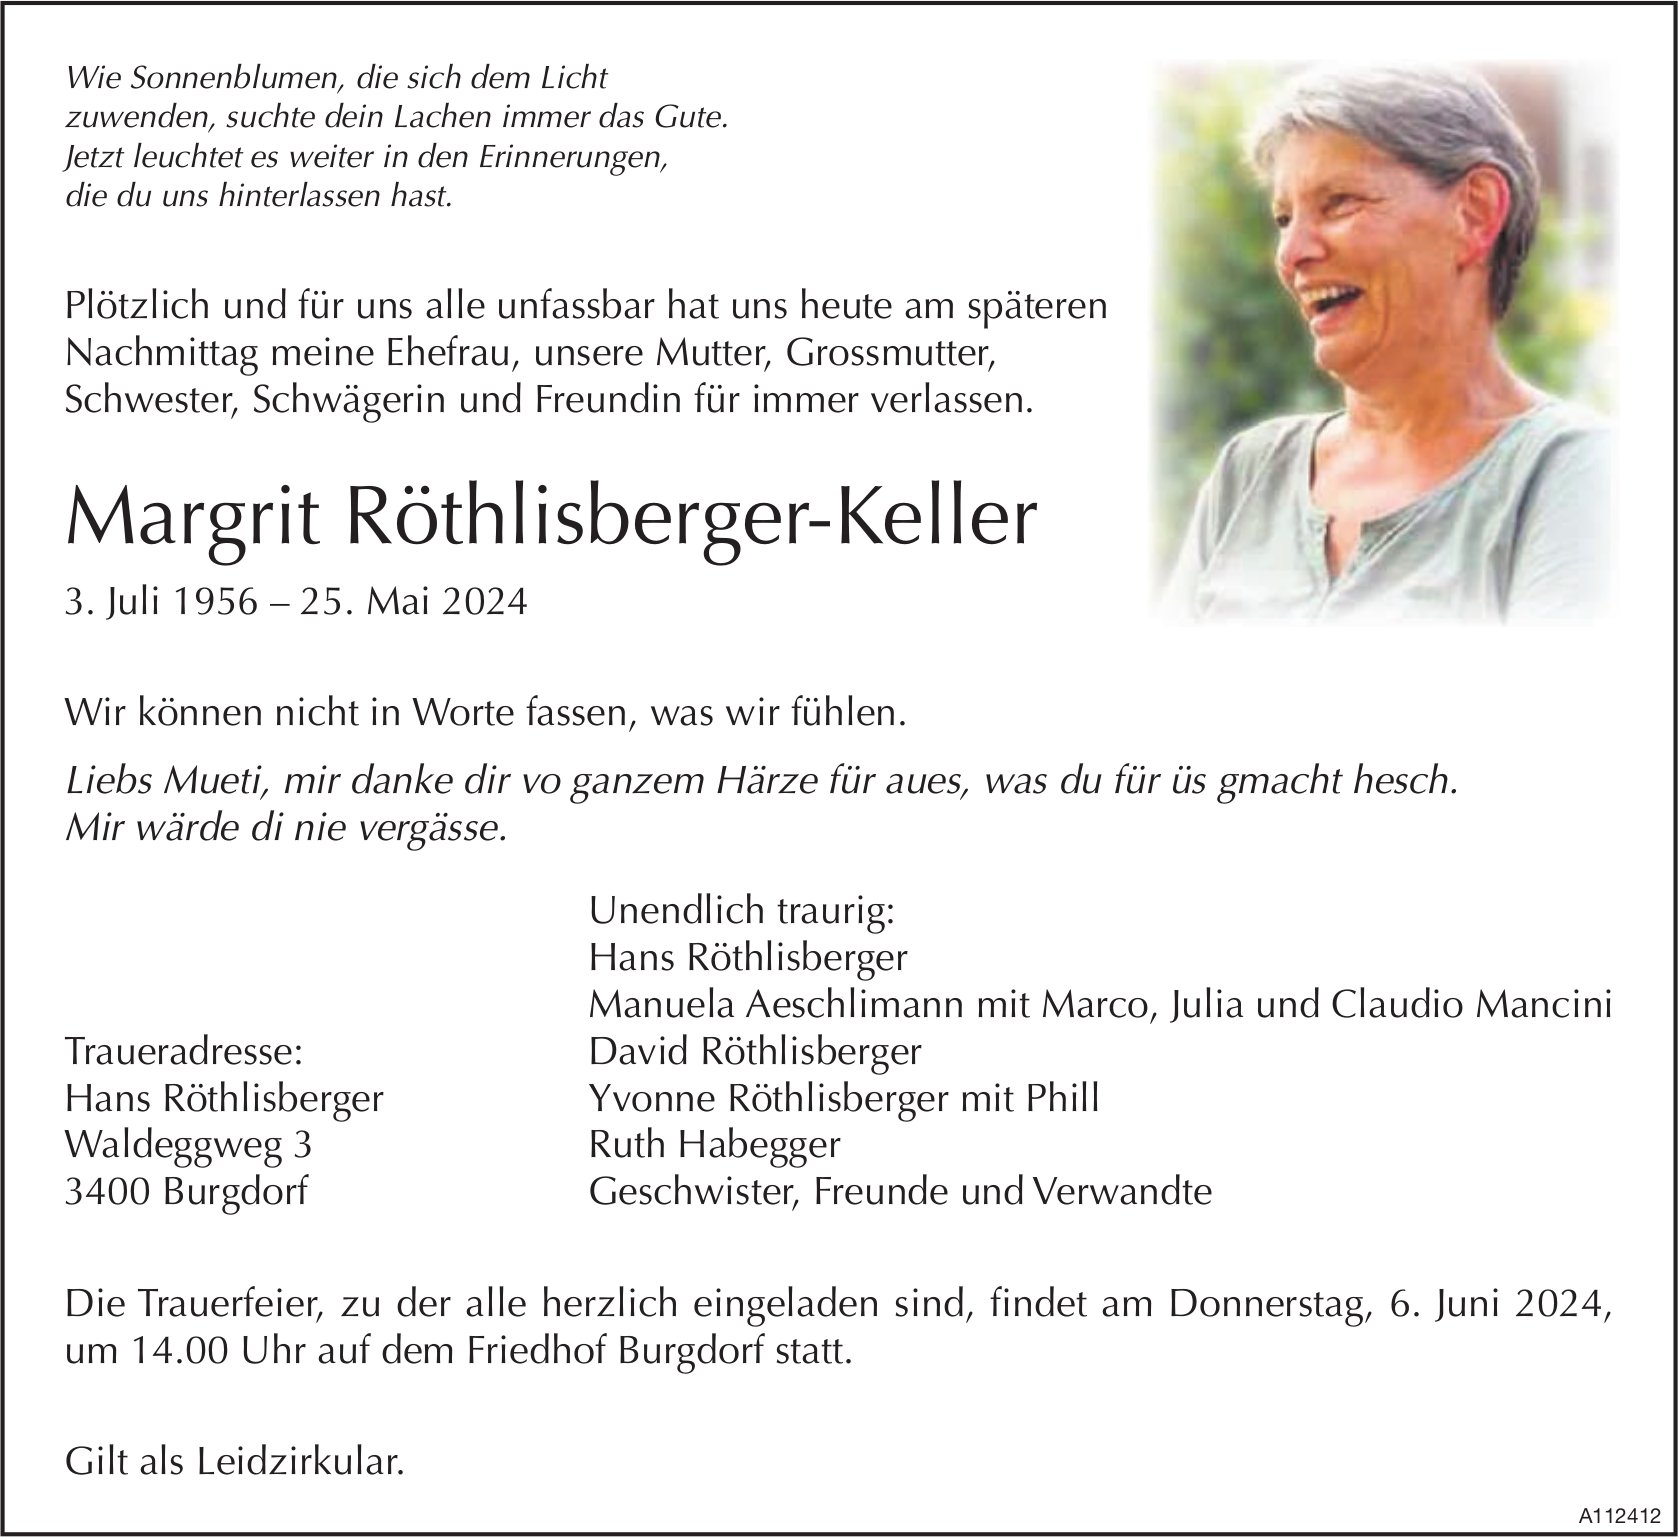 Margrit Röthlisberger-Keller, Mai 2024 / TA